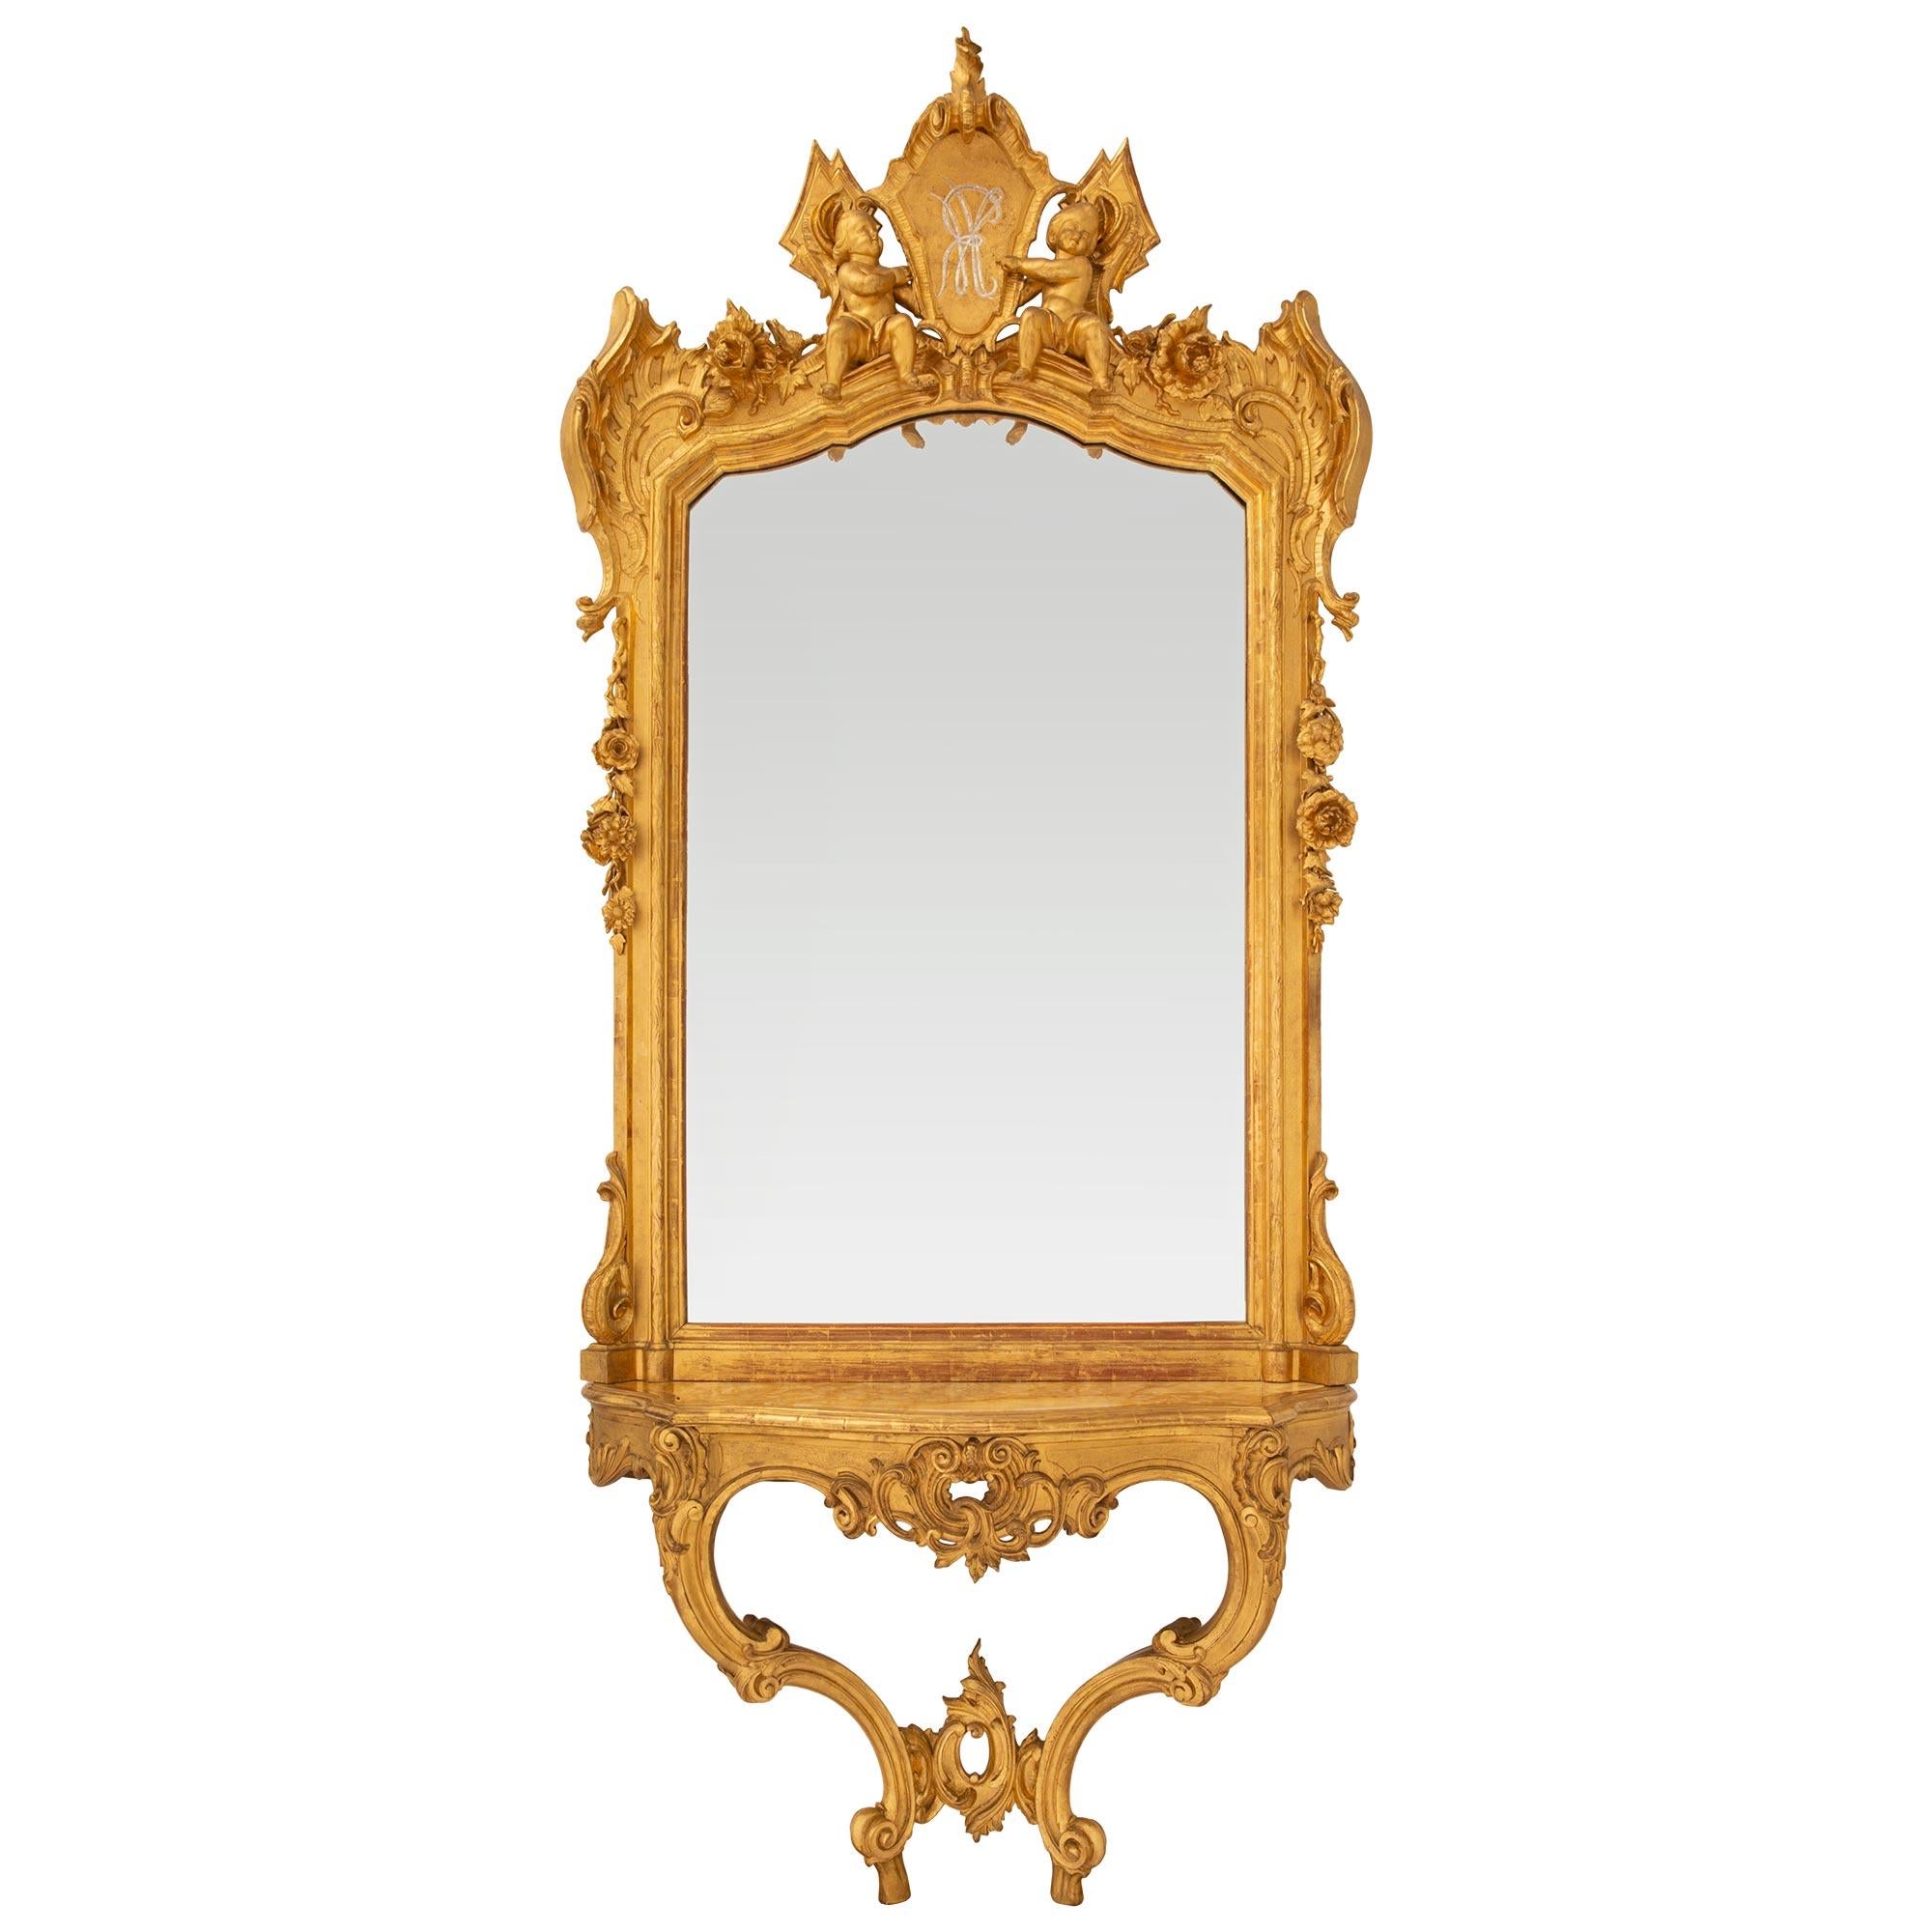 Une spectaculaire console et un miroir en bois doré italien du 19ème siècle. La console repose sur des pieds à volutes en 